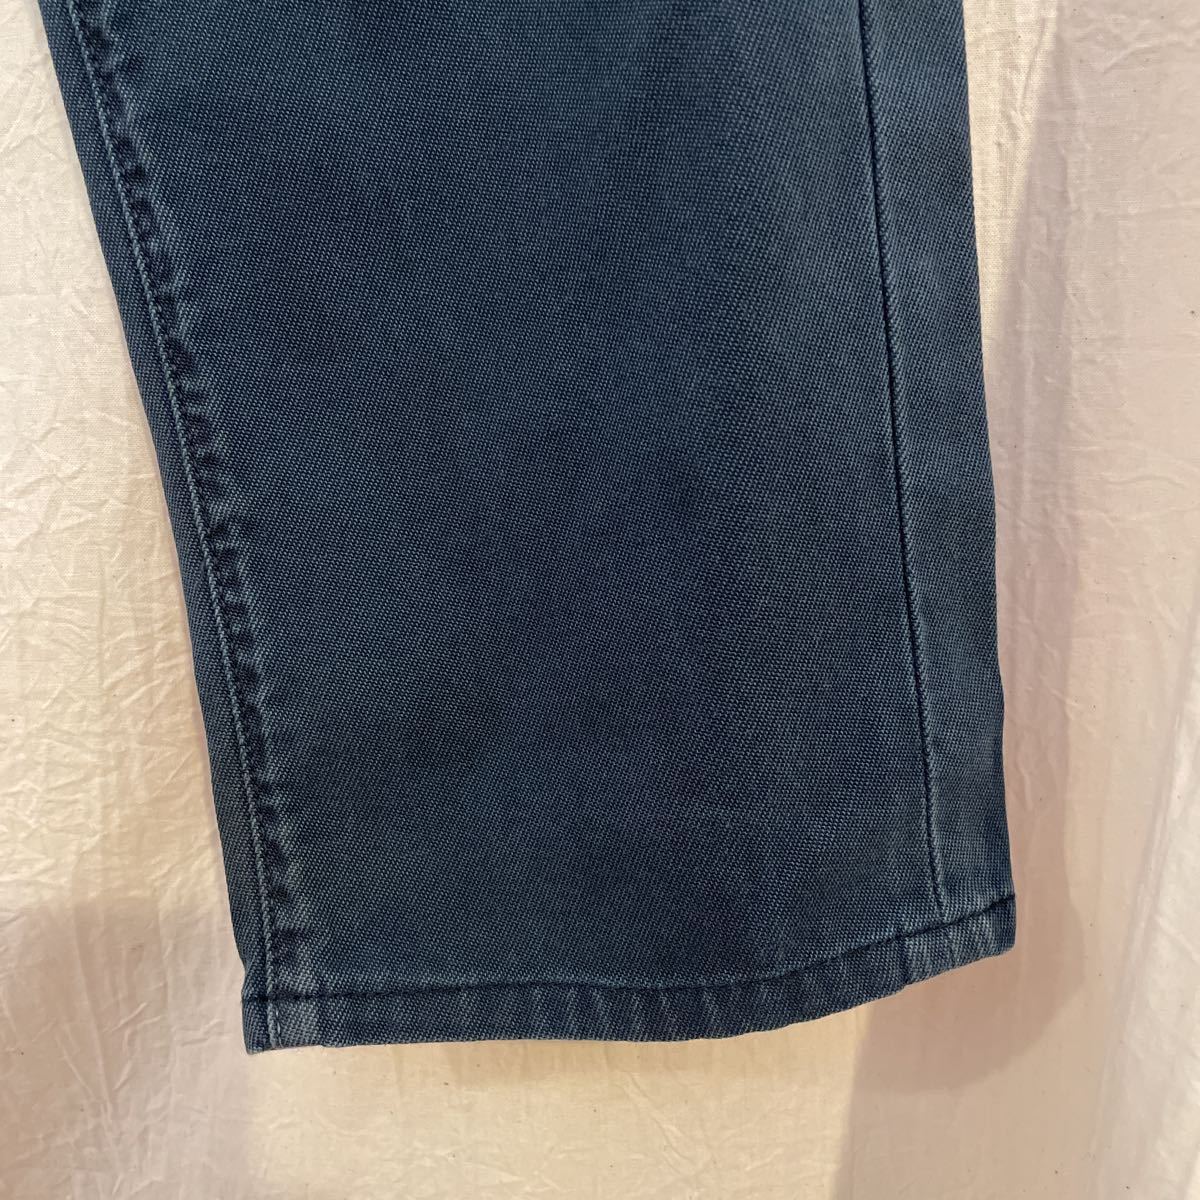 INCOTEX CINQUE( INCOTEX подбородок ke) хлопок брюки 30 темно-синий Vintage обработка Sky тонкий конический незначительный земля стрейч 